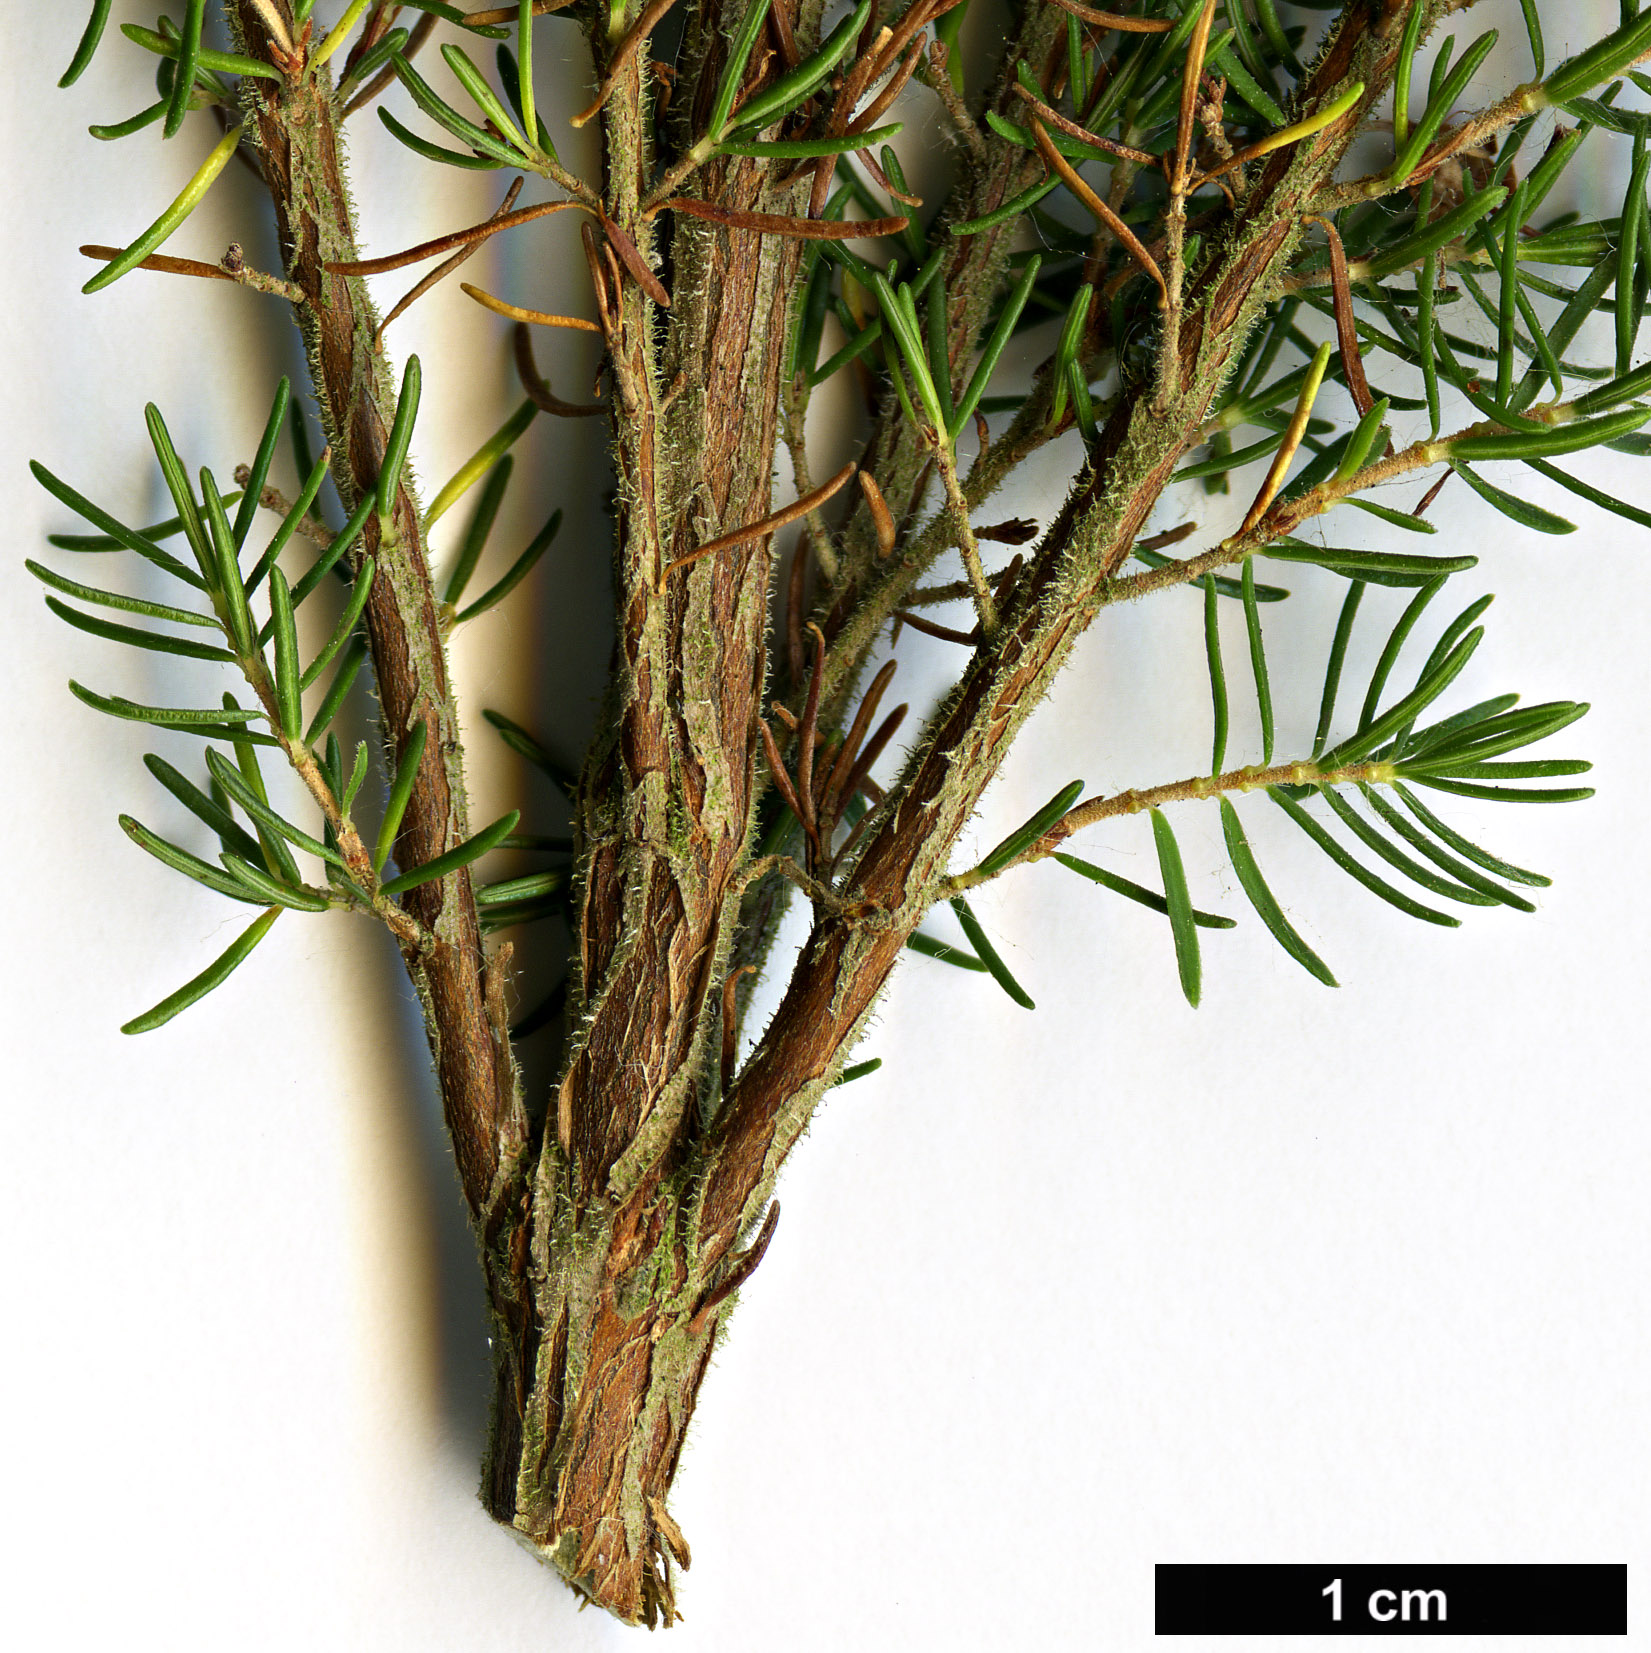 High resolution image: Family: Ericaceae - Genus: Erica - Taxon: arborea